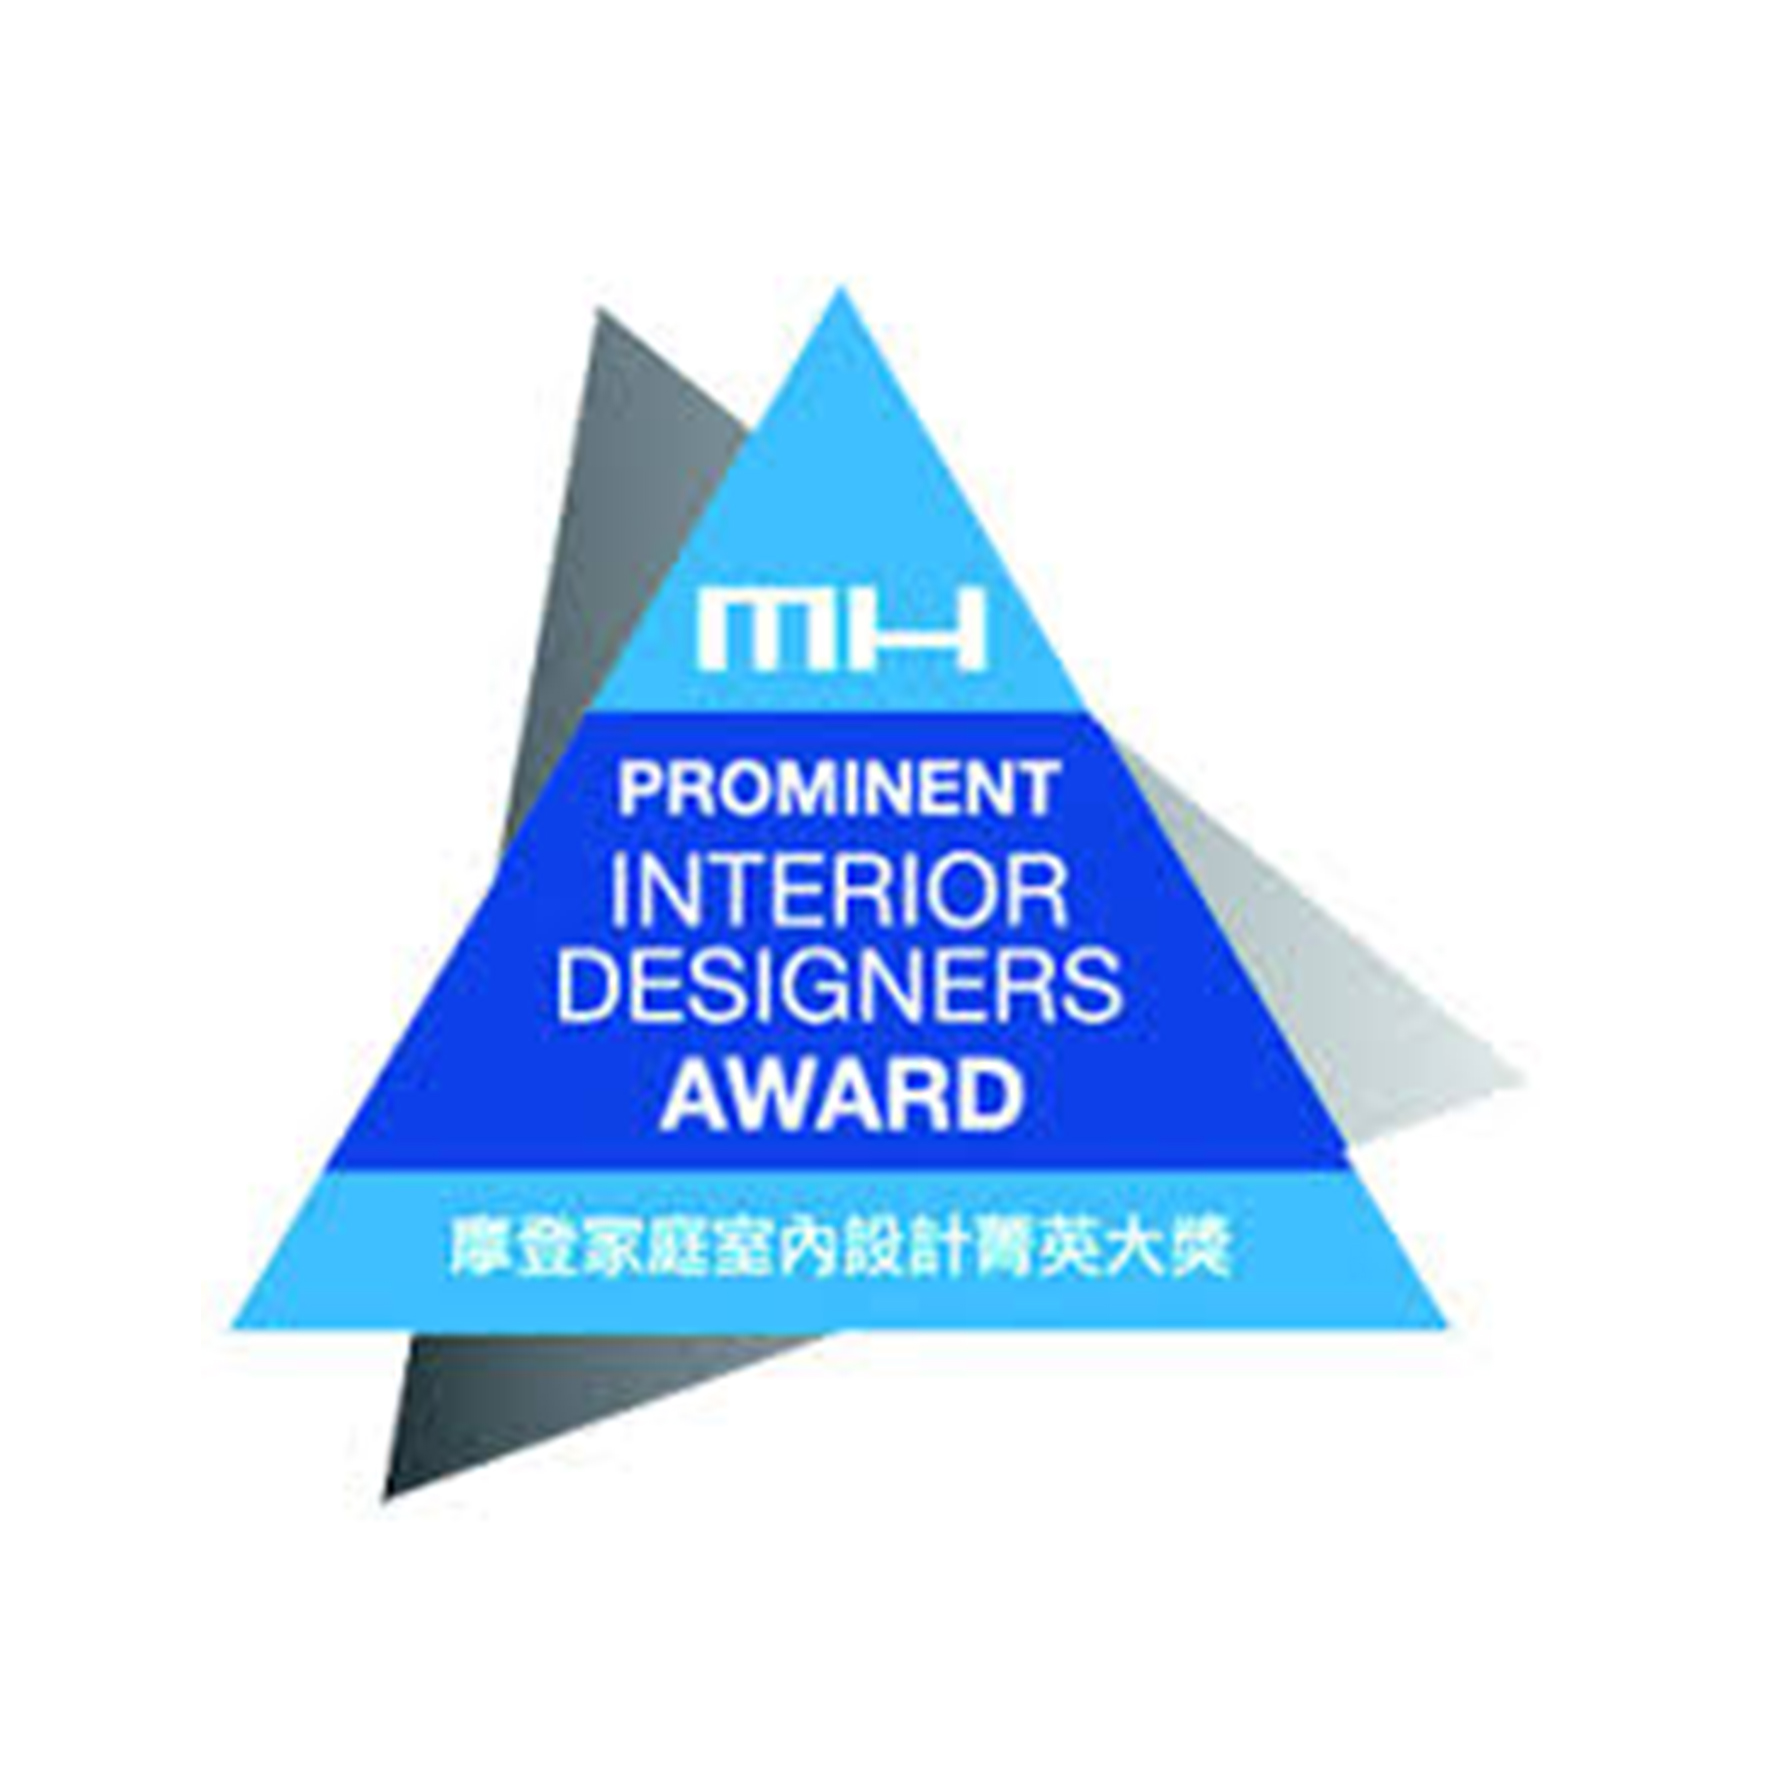 MH Prominent Interior Designer Award, Modern Home Designer Award 2015